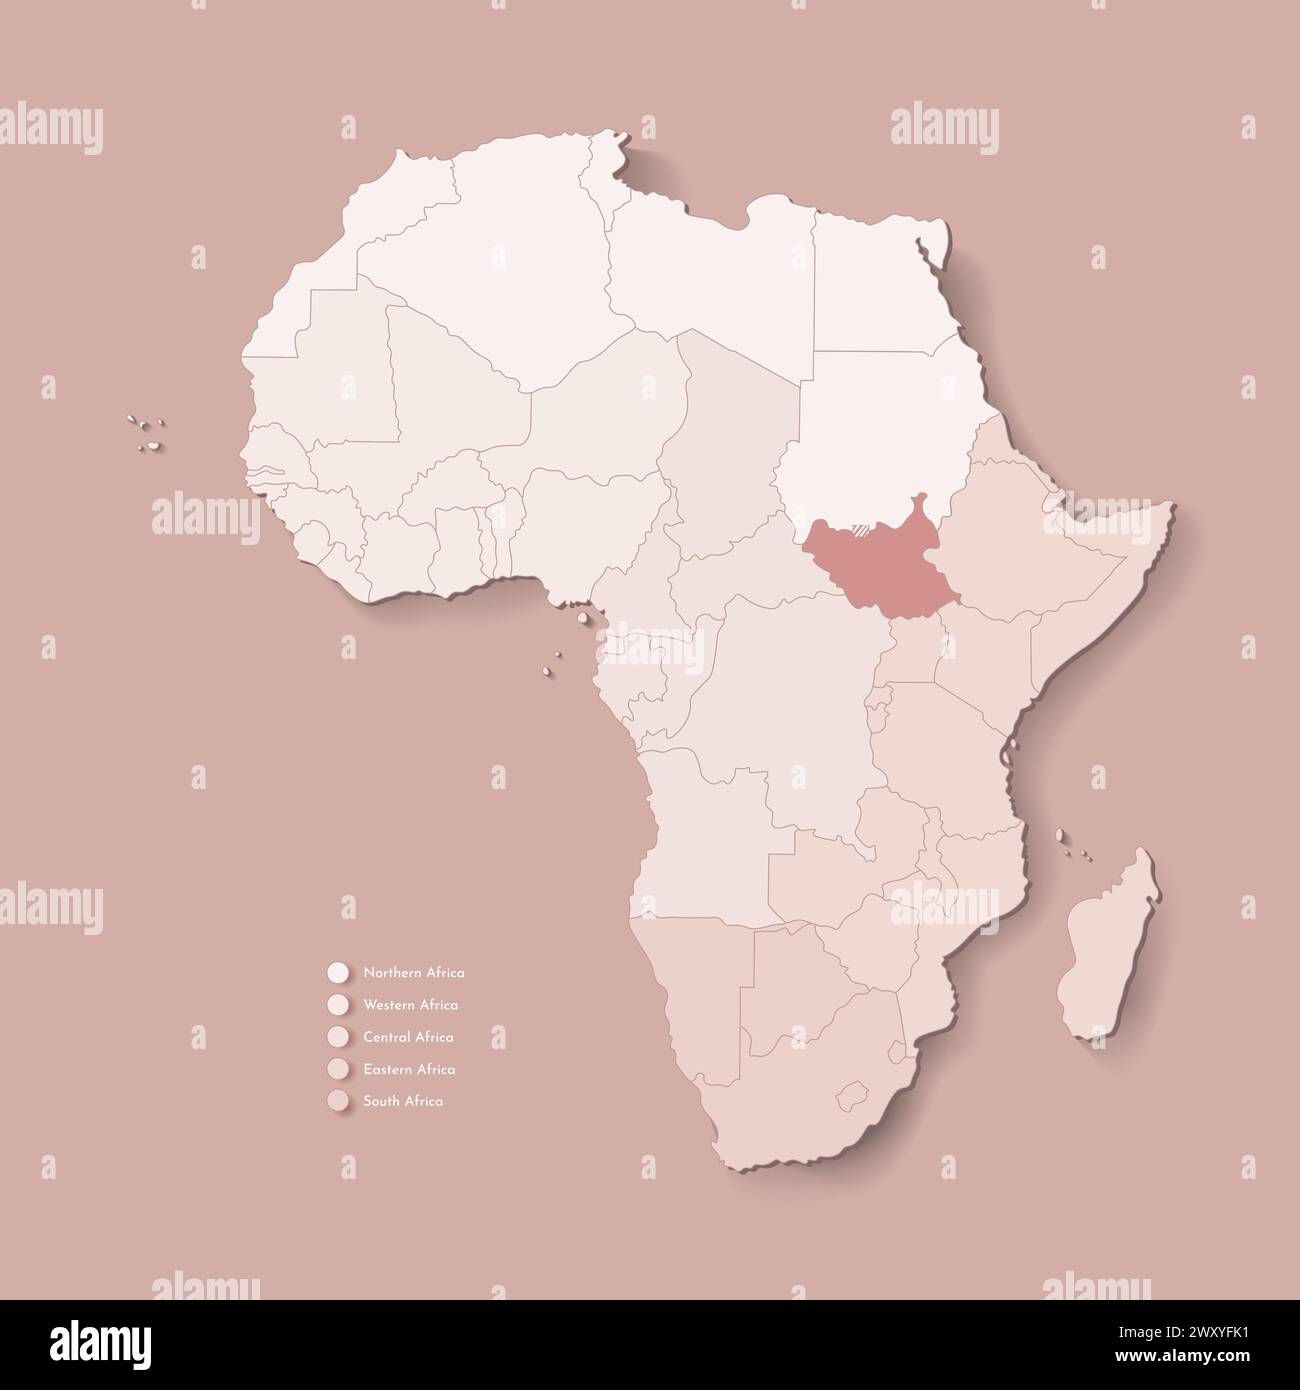 Illustrazione vettoriale con continente africano con confini di tutti gli stati e paese contrassegnato Sud Sudan. Mappa politica di colore marrone con occidentale, sout Illustrazione Vettoriale